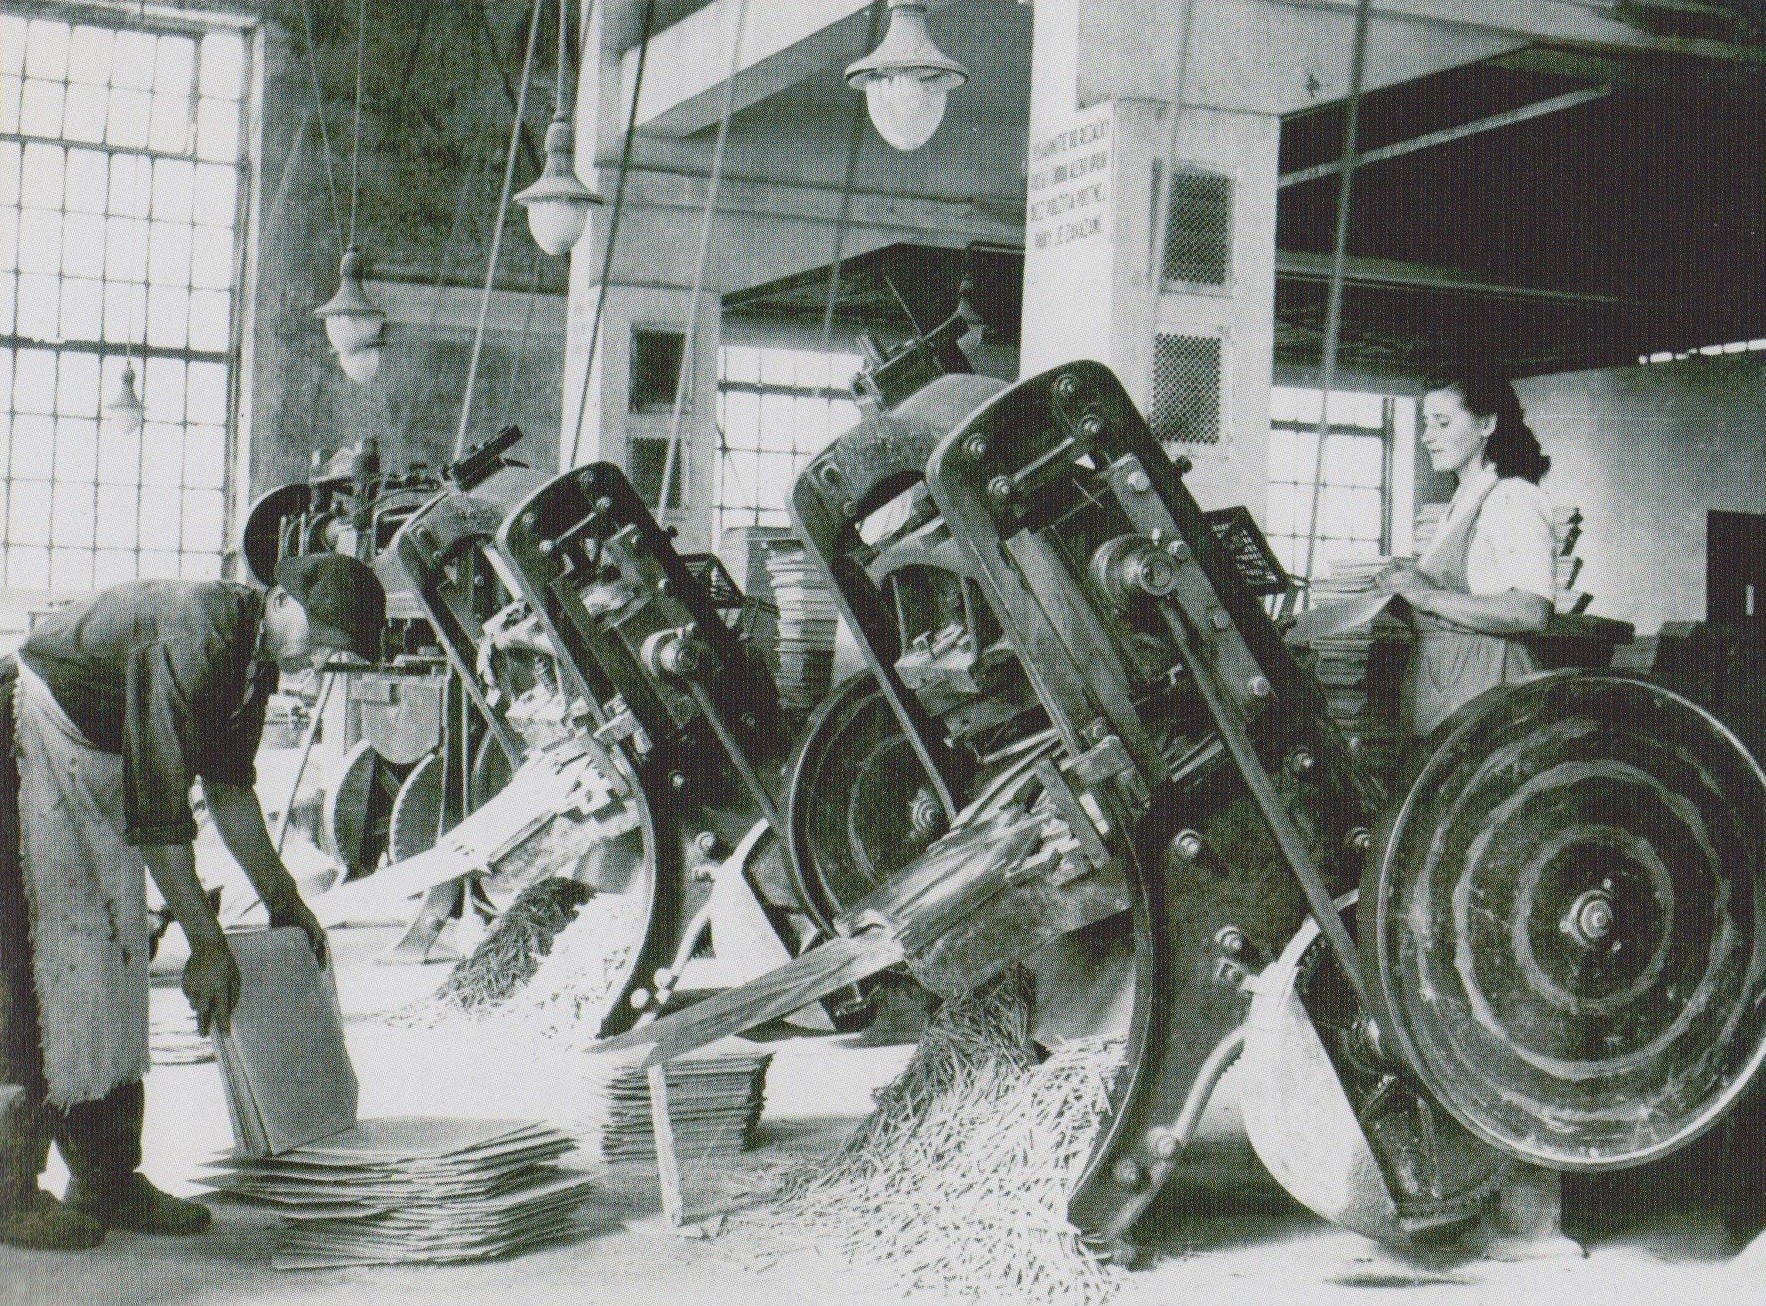 Fotografia z Azbestovocementových závodov v Púchove (pred tým Syenit a Syderolit), ktorá v 50. rokoch zachytila výrobu škridiel.